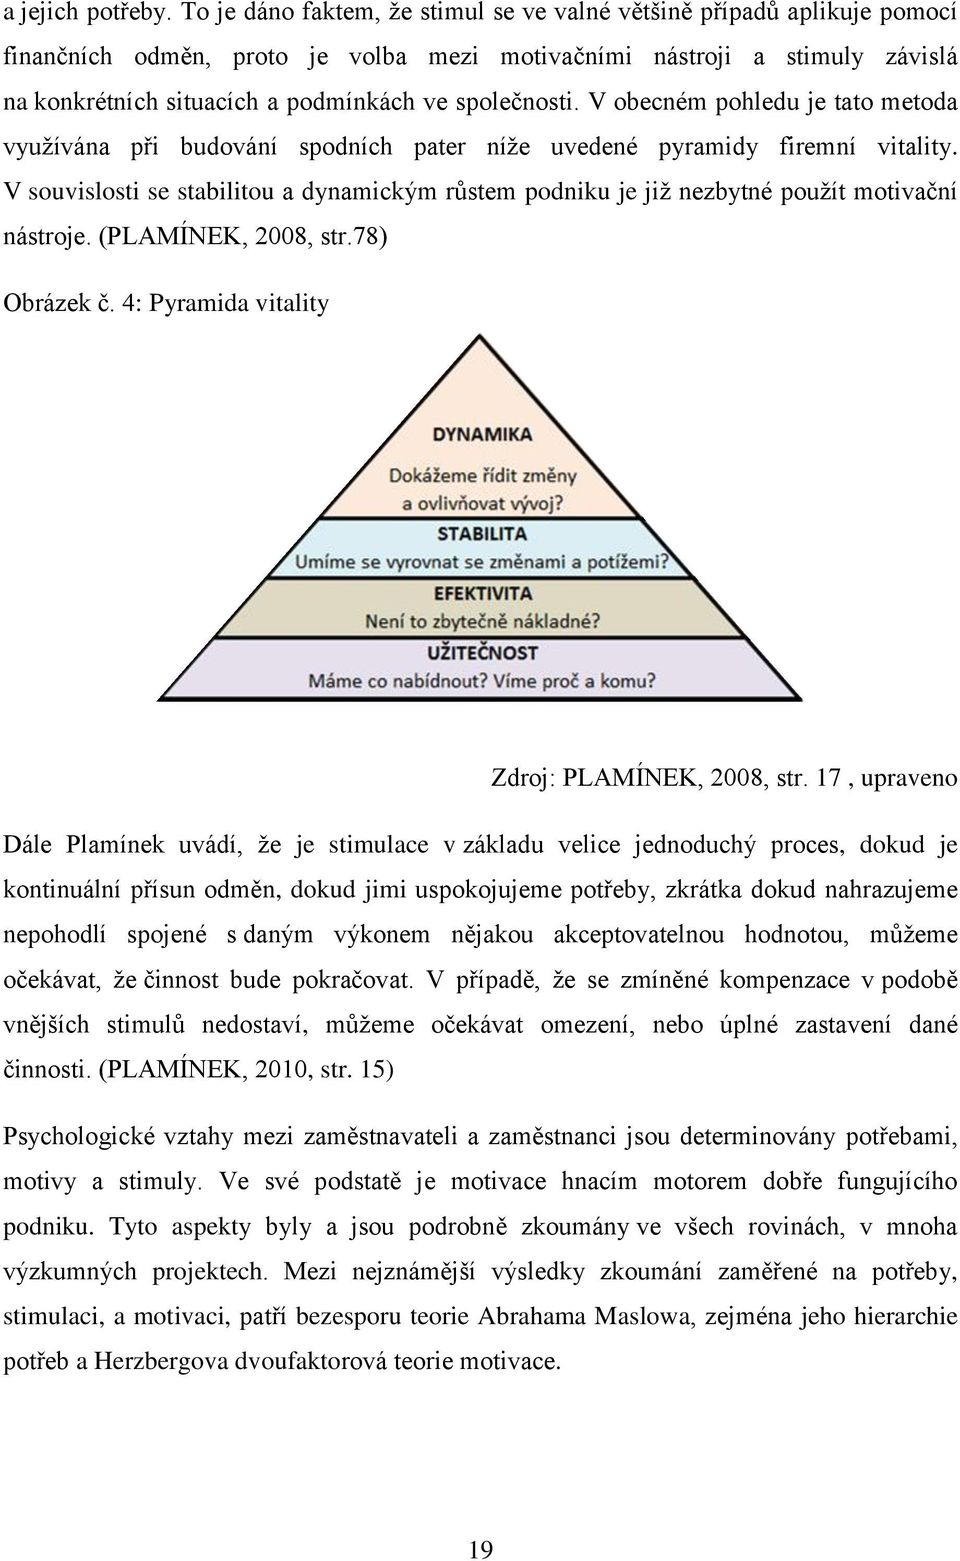 společnosti. V obecném pohledu je tato metoda využívána při budování spodních pater níže uvedené pyramidy firemní vitality.